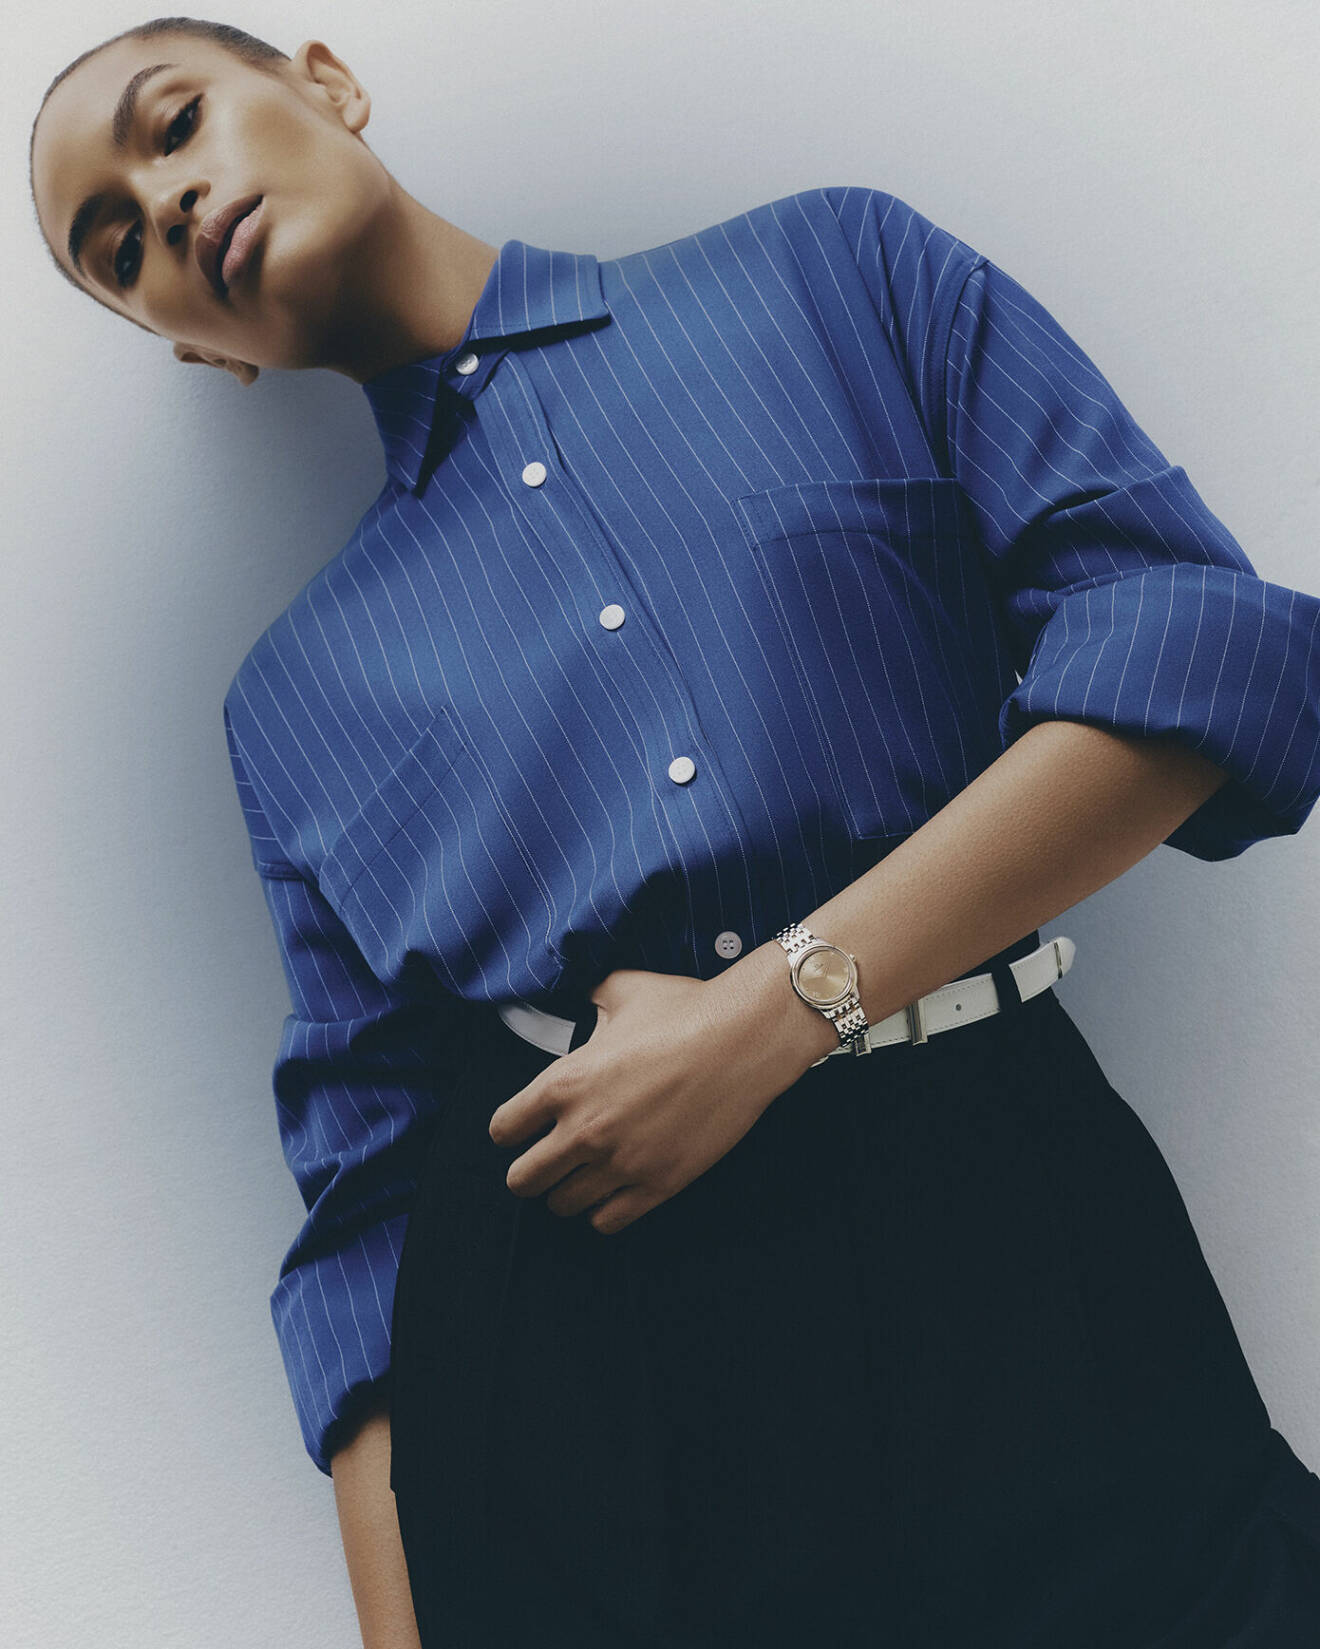 Modellen bär en randig blå skjorta och svarta byxor från The Frankie Shop. På armen har hon en klocka från Omega.